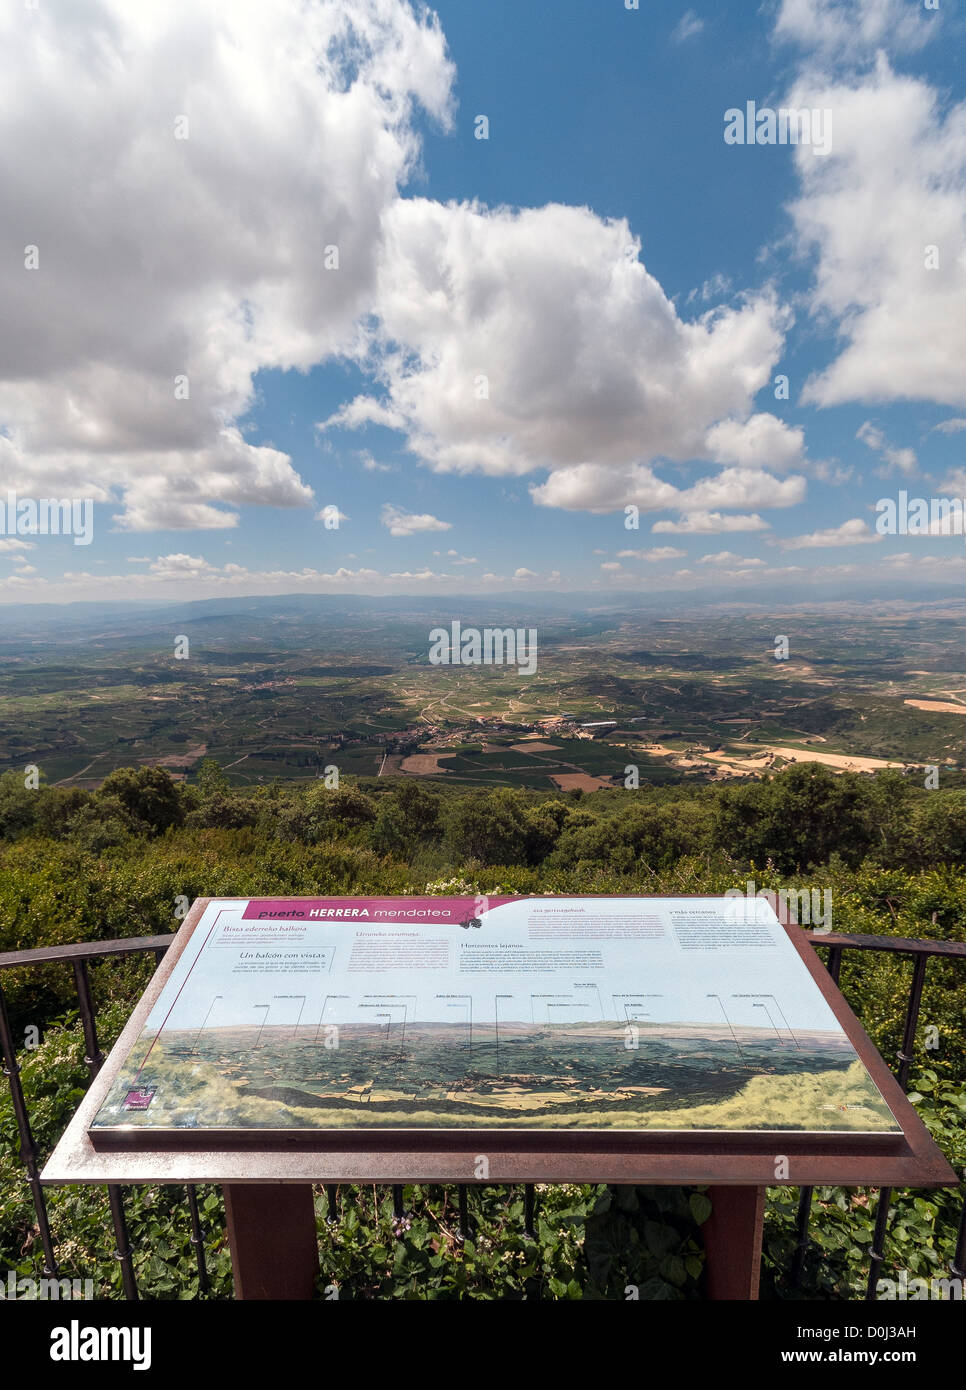 La scheda Informazioni si affaccia sul vino Rioja regione dall'Herrera mountain pass nel nord della Spagna Foto Stock